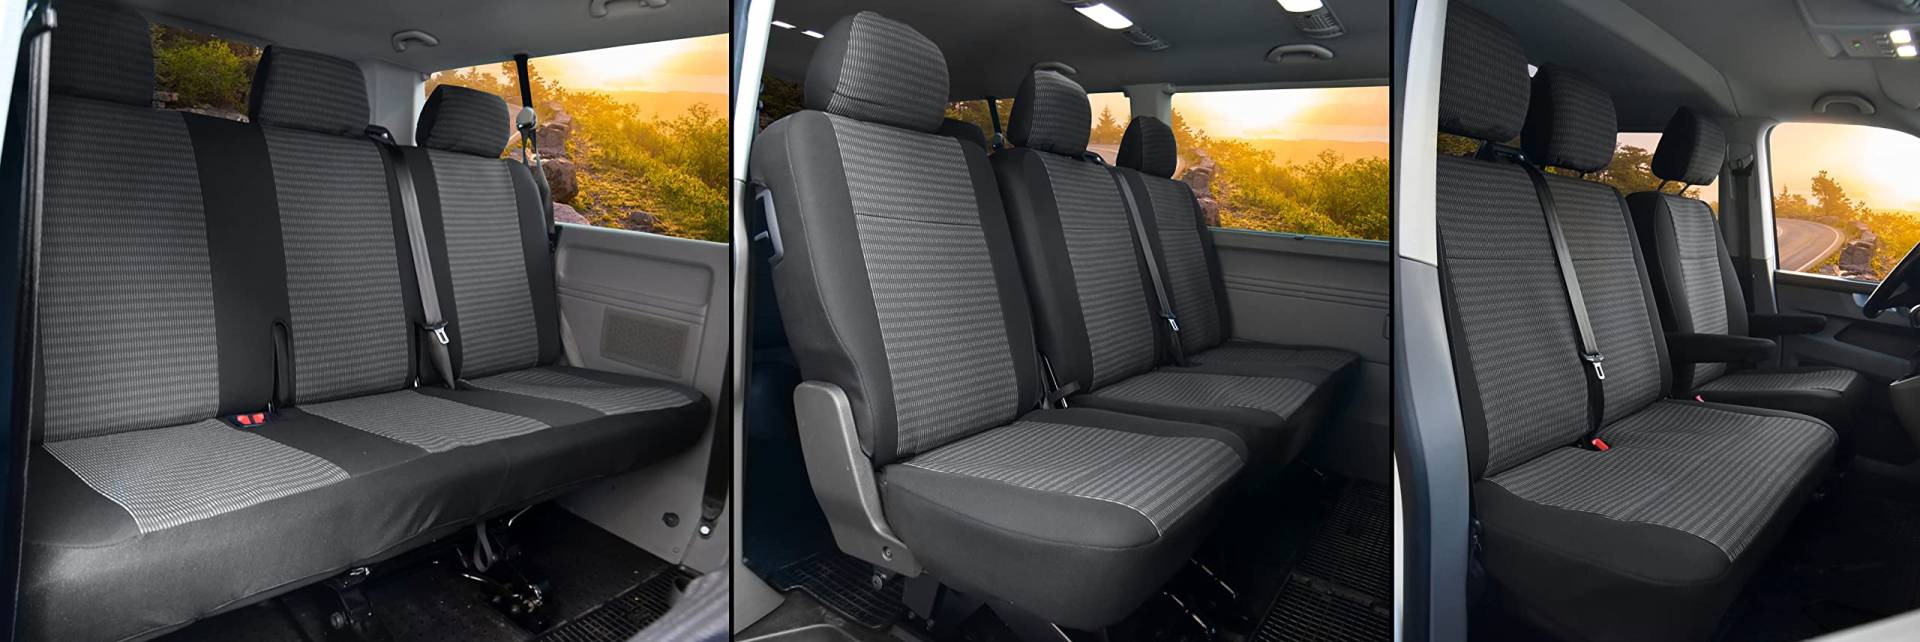 Sitzbezüge Stoff passgenau passend für VW T6 Transporter/Caravelle/Multivan ab 2015/19-9 Sitzer LUX von Z4L